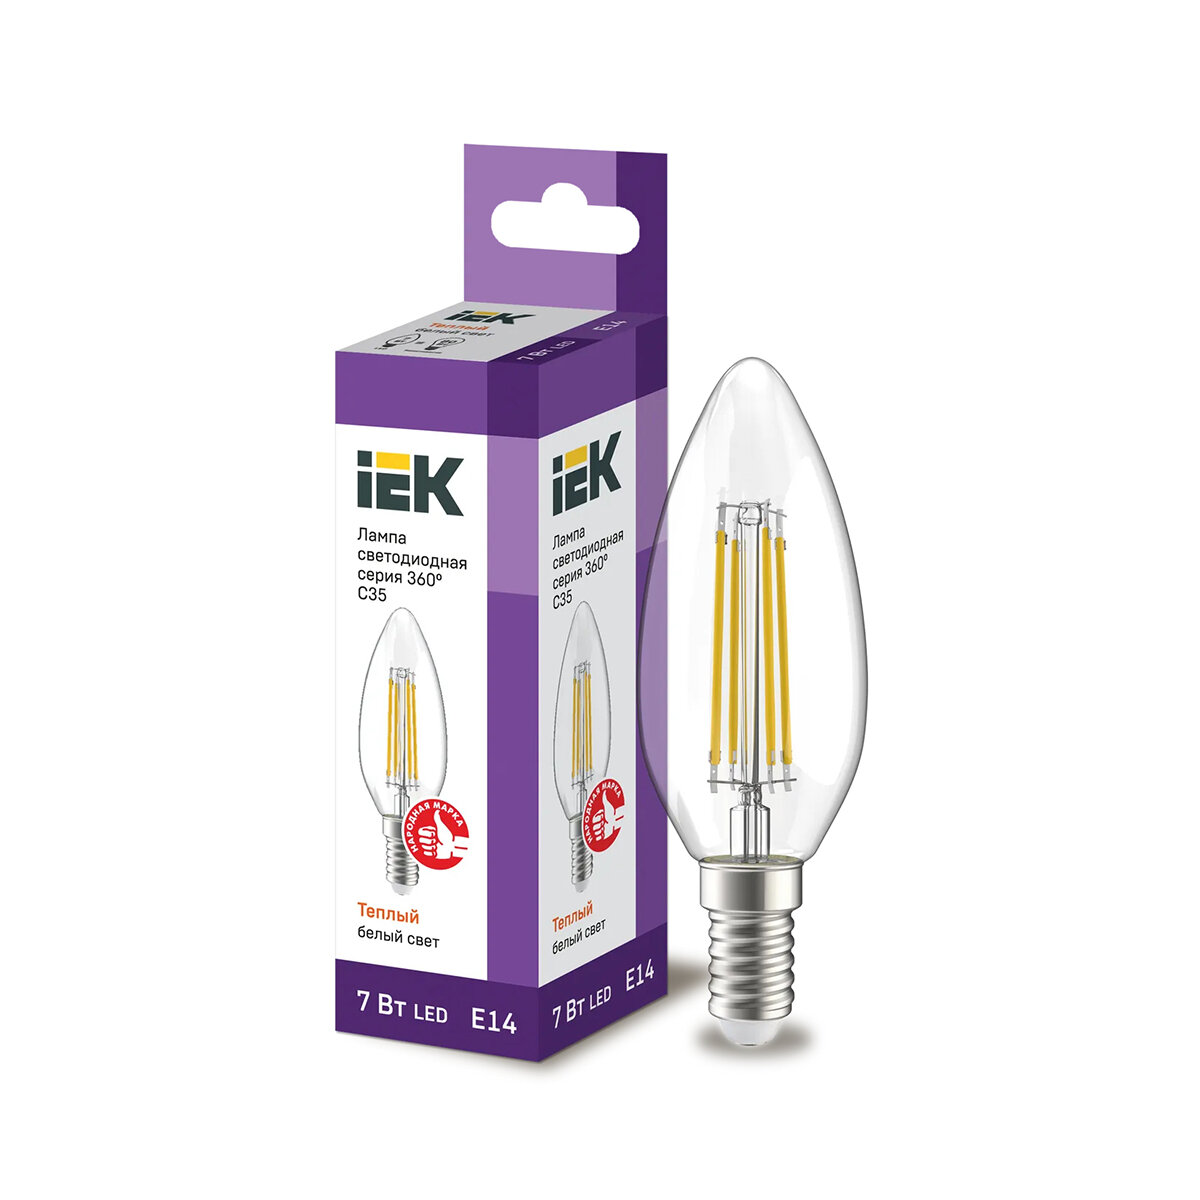 Лампа светодиодная LED IEK Свеча, серия 360°, E14, C35, 7 Вт, 3000 K, теплый свет